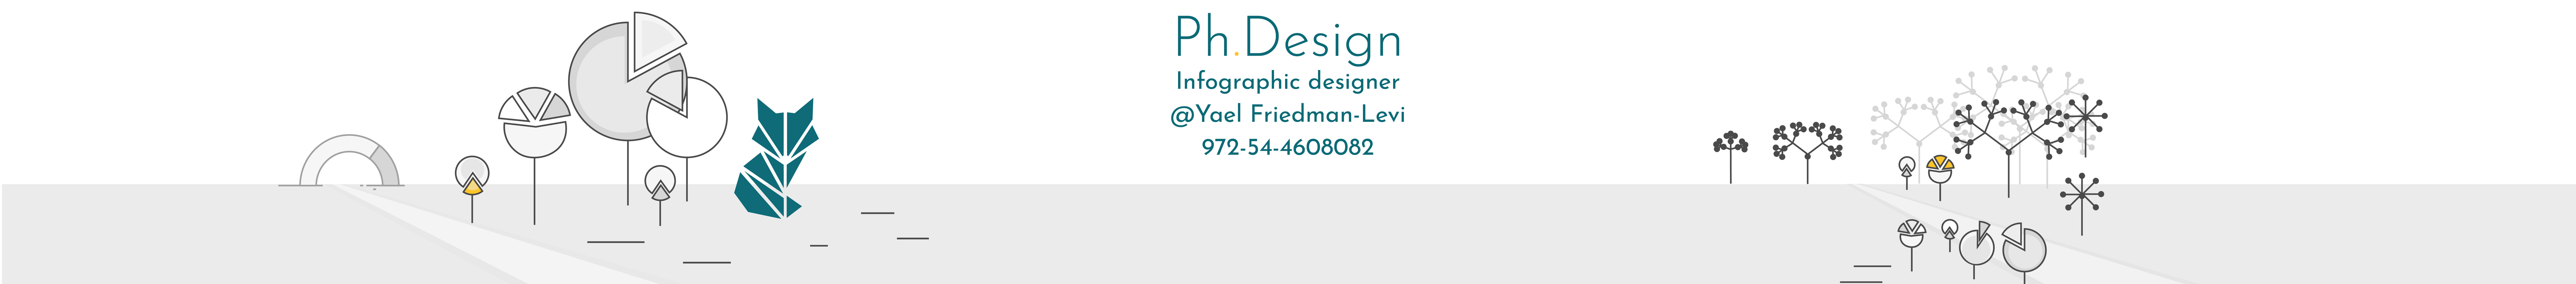 Ph. Design's profile banner